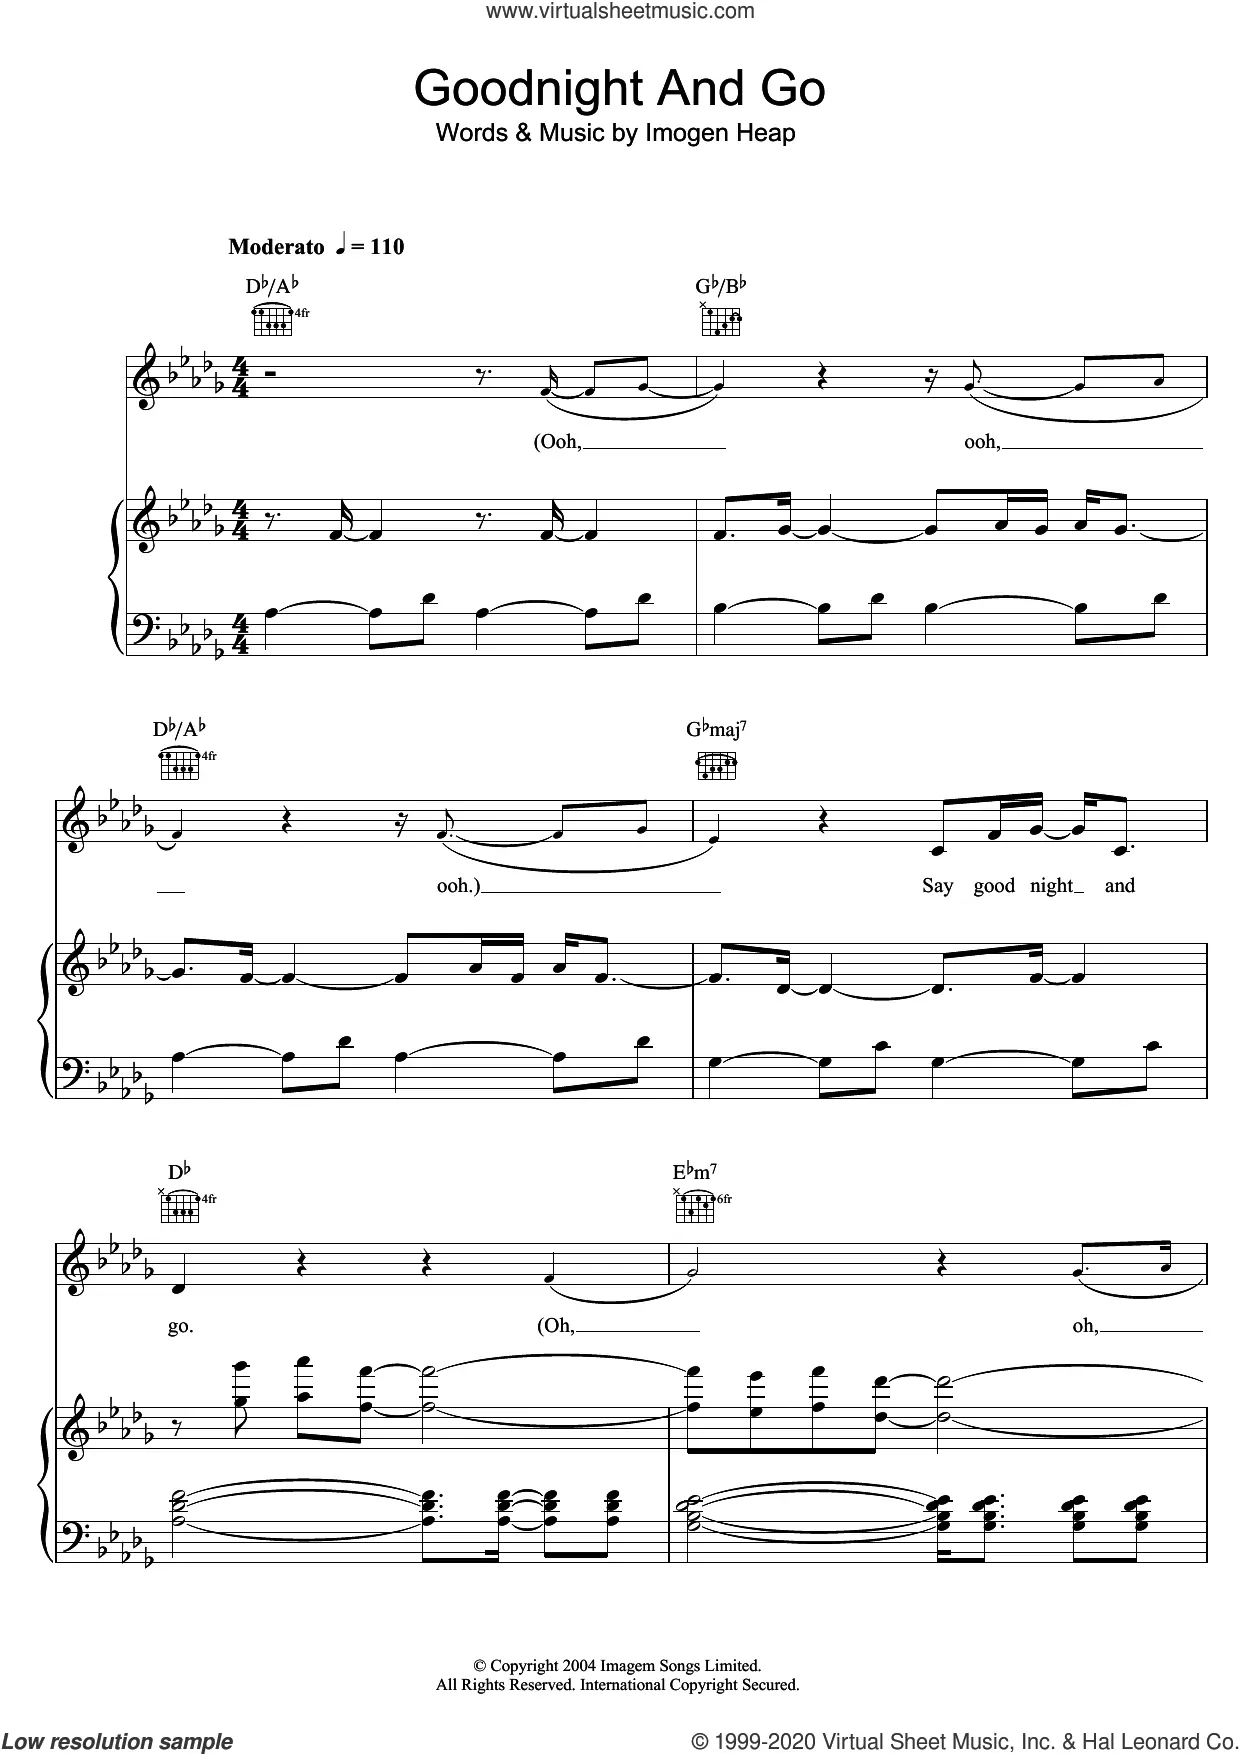 Hide and seek - Imogen Heap Sheet music for Clarinet in b-flat